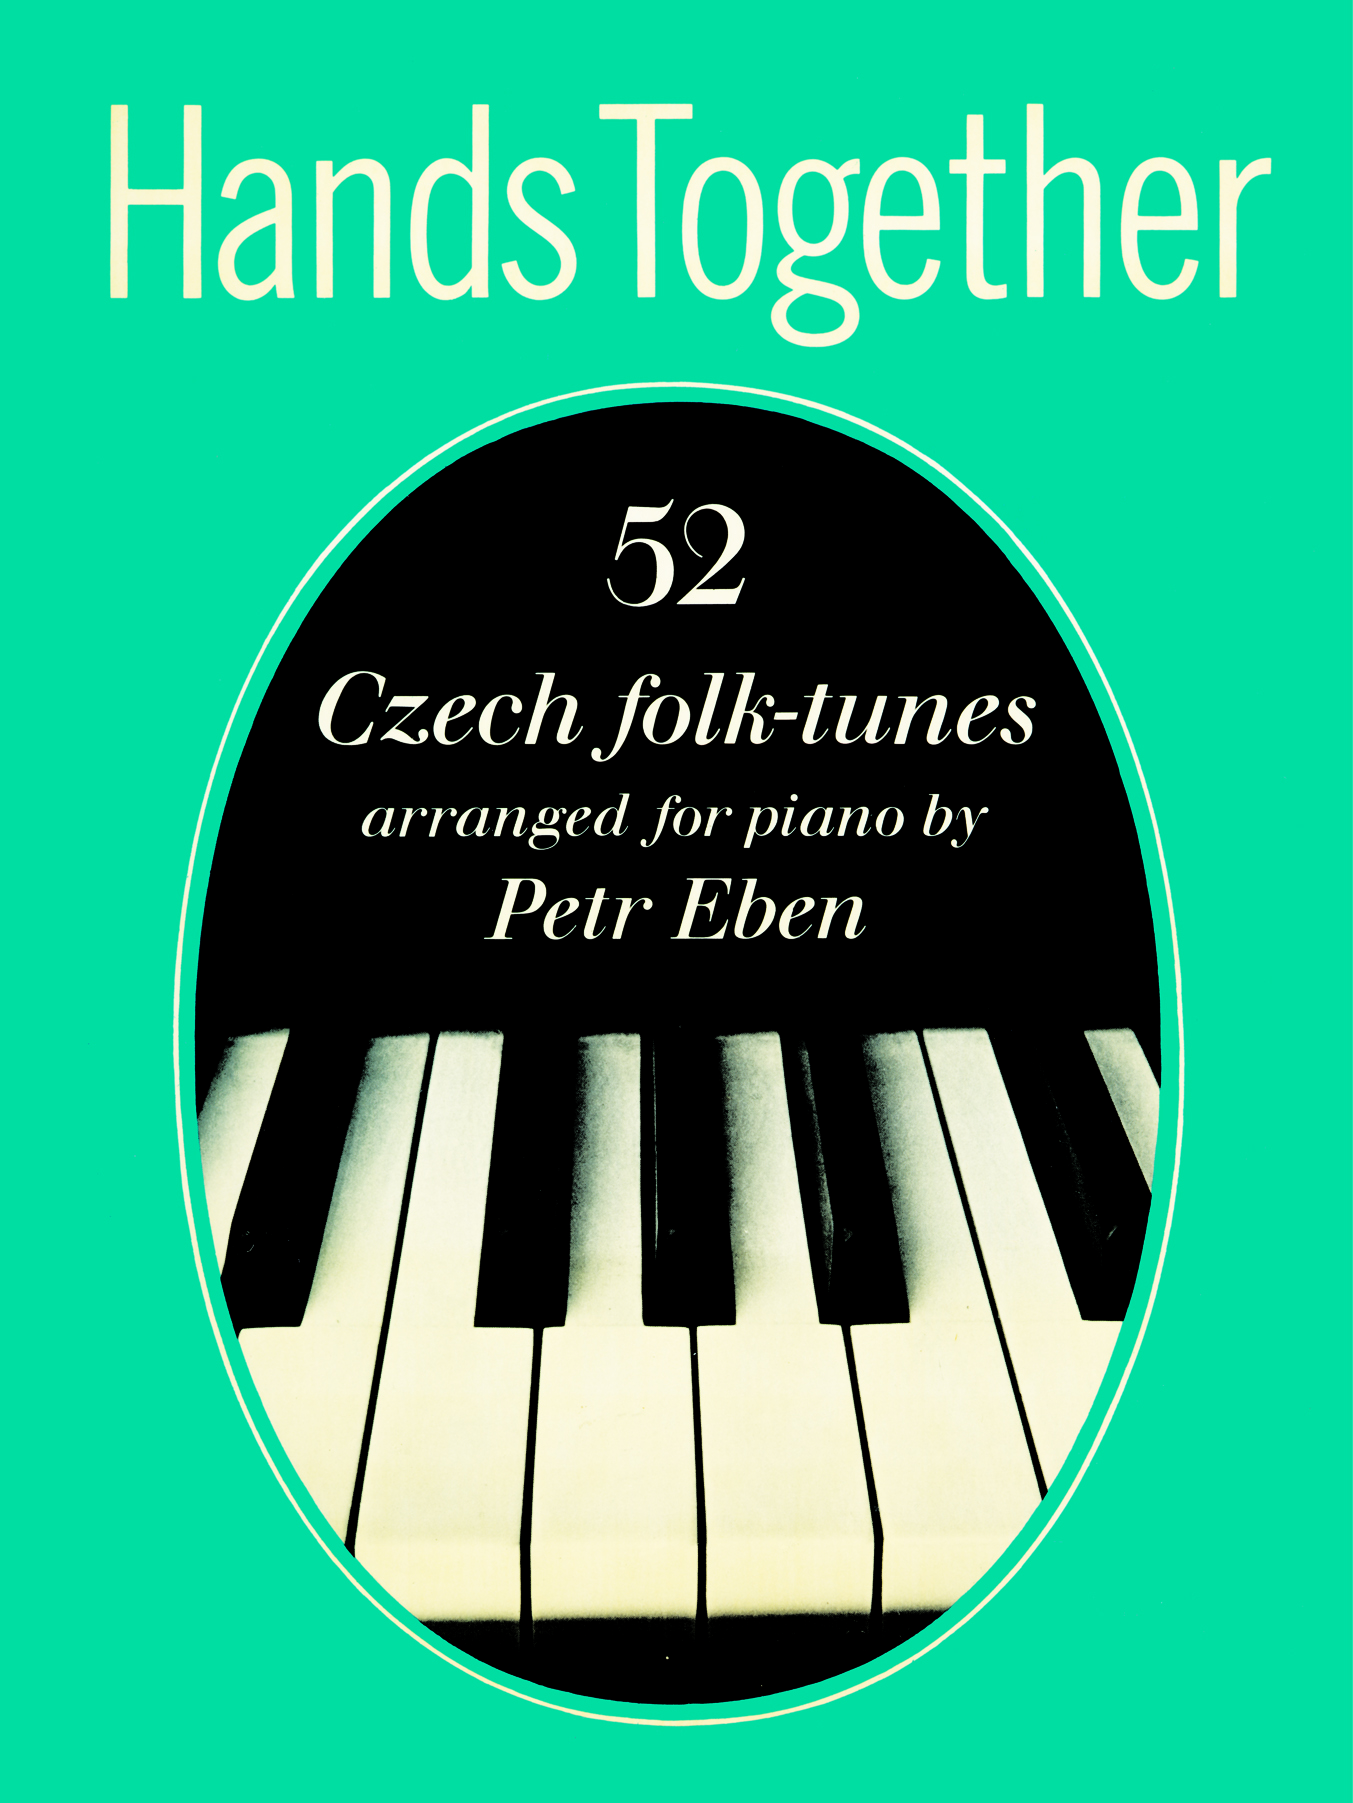 Hands Together (EBEN PETR)